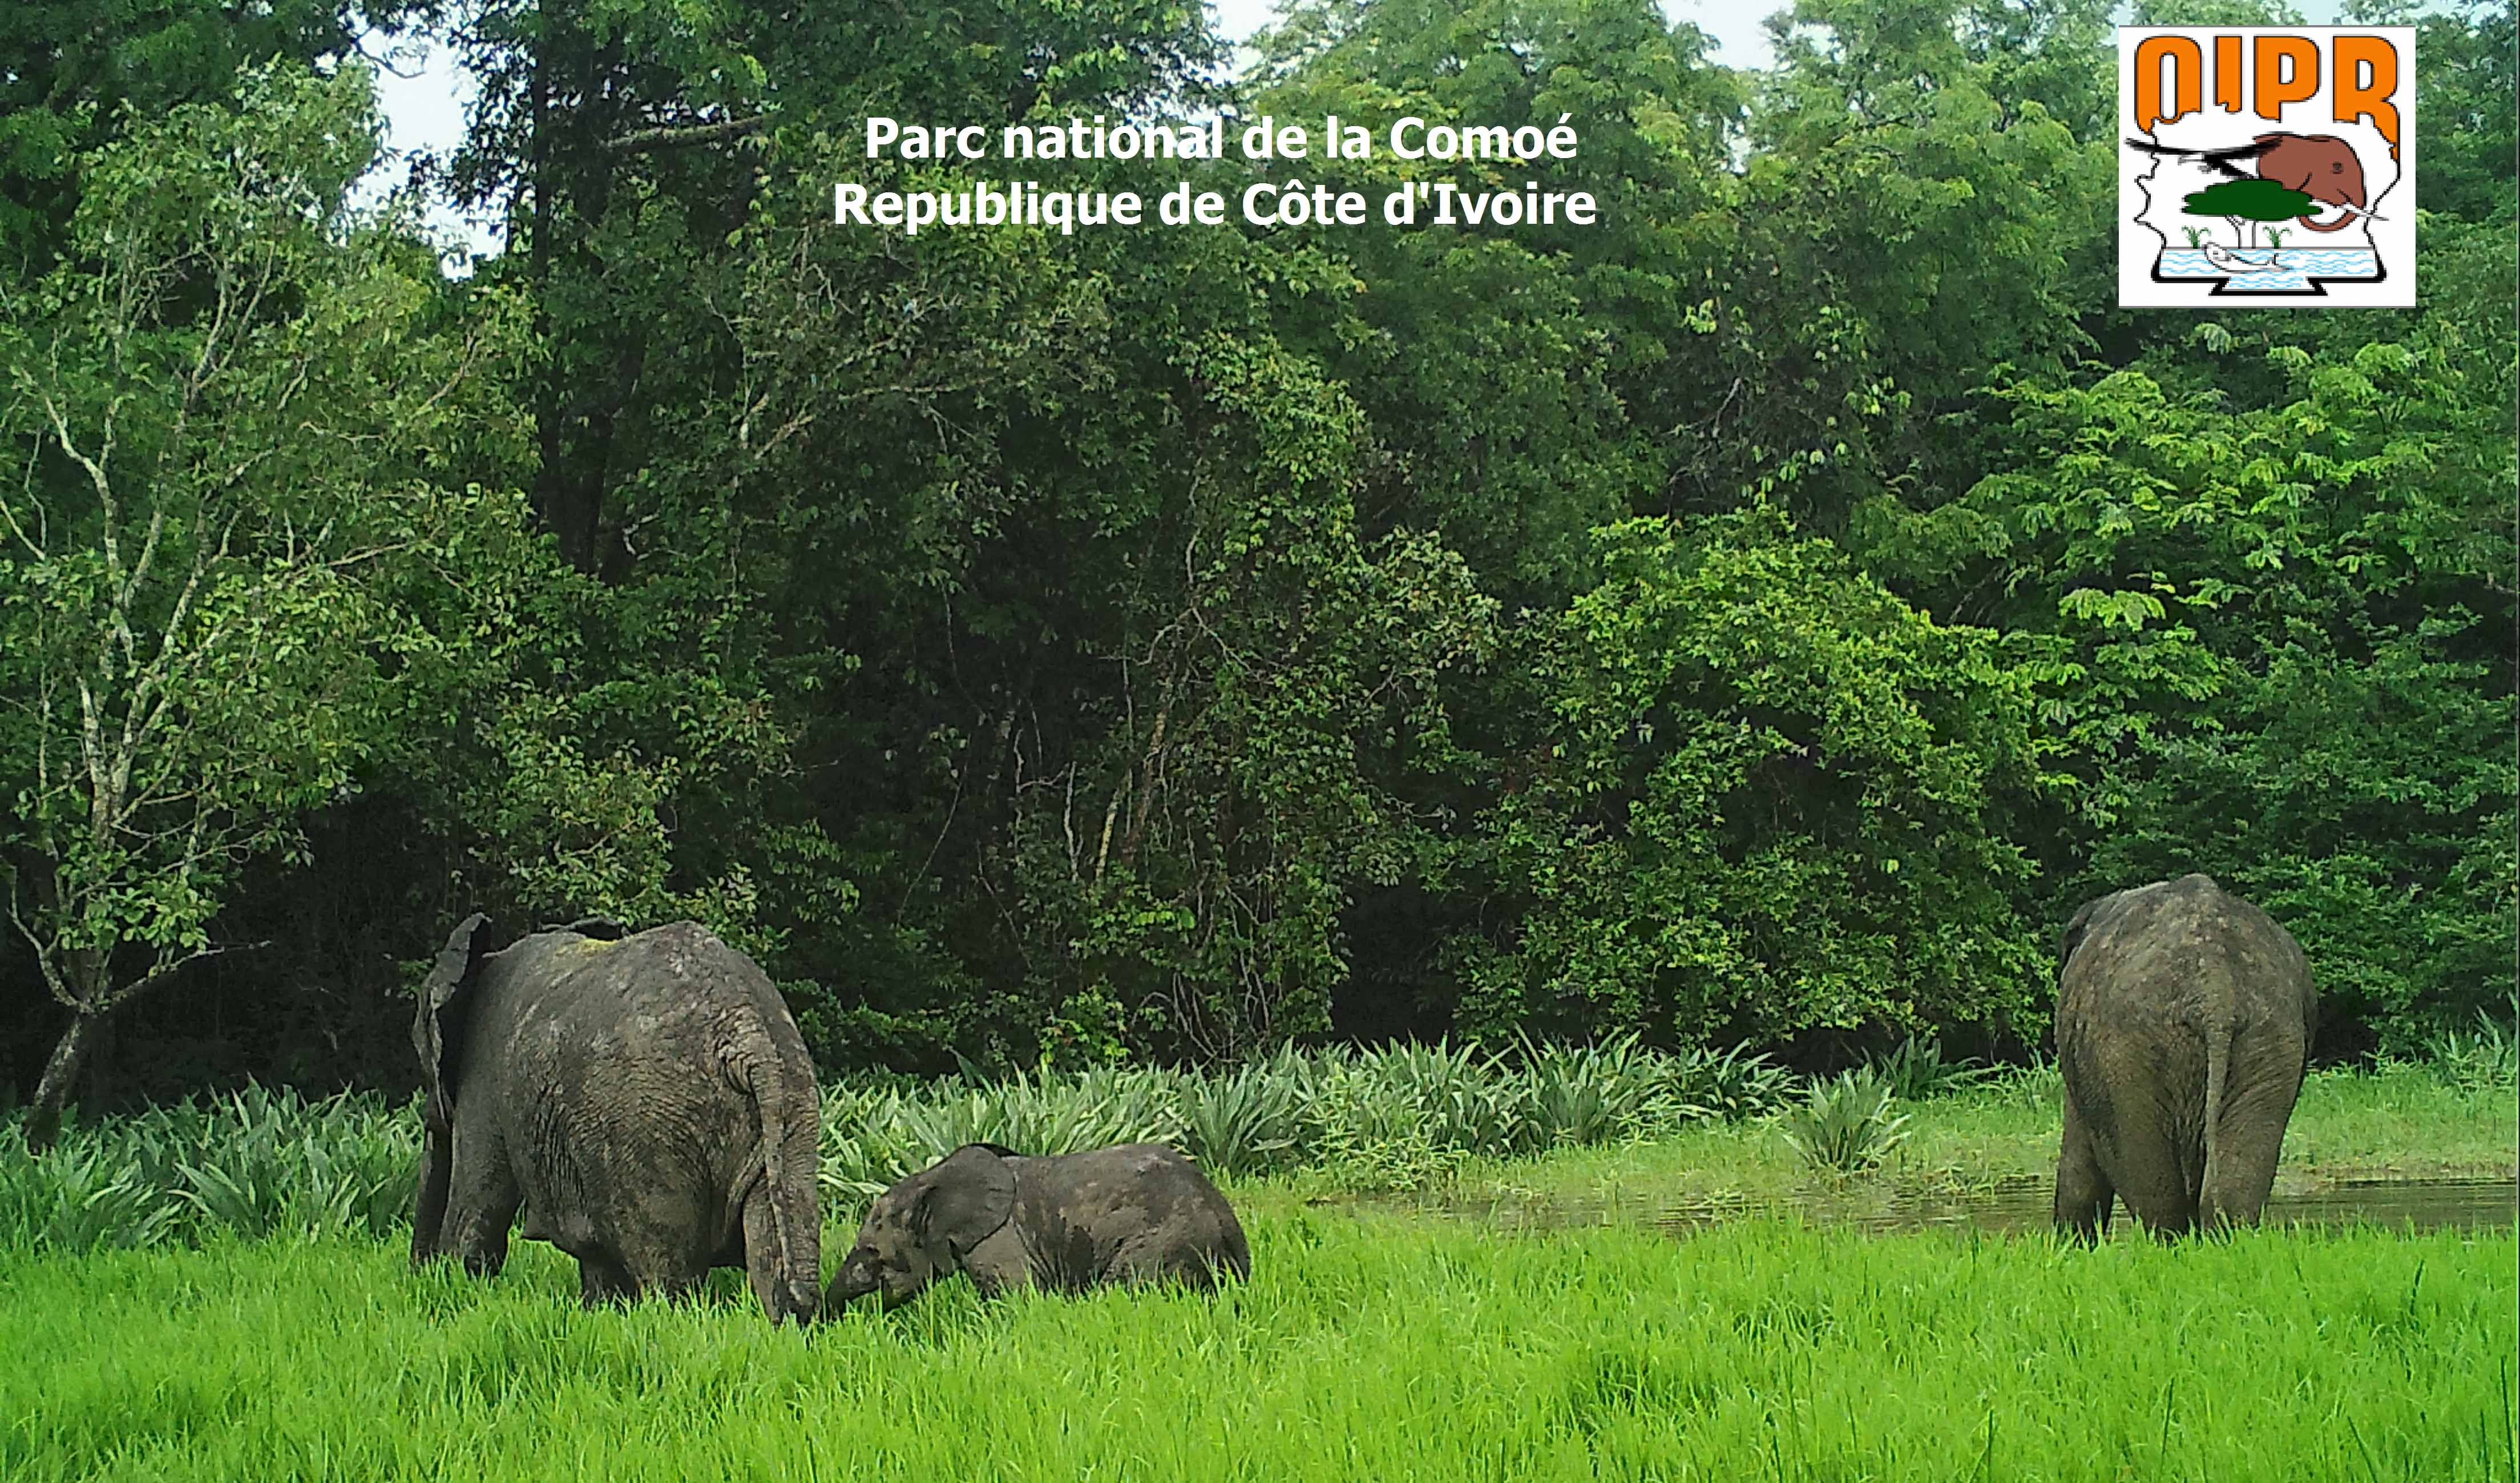 Elephants in Comoé National Park, Côte d'Ivoire